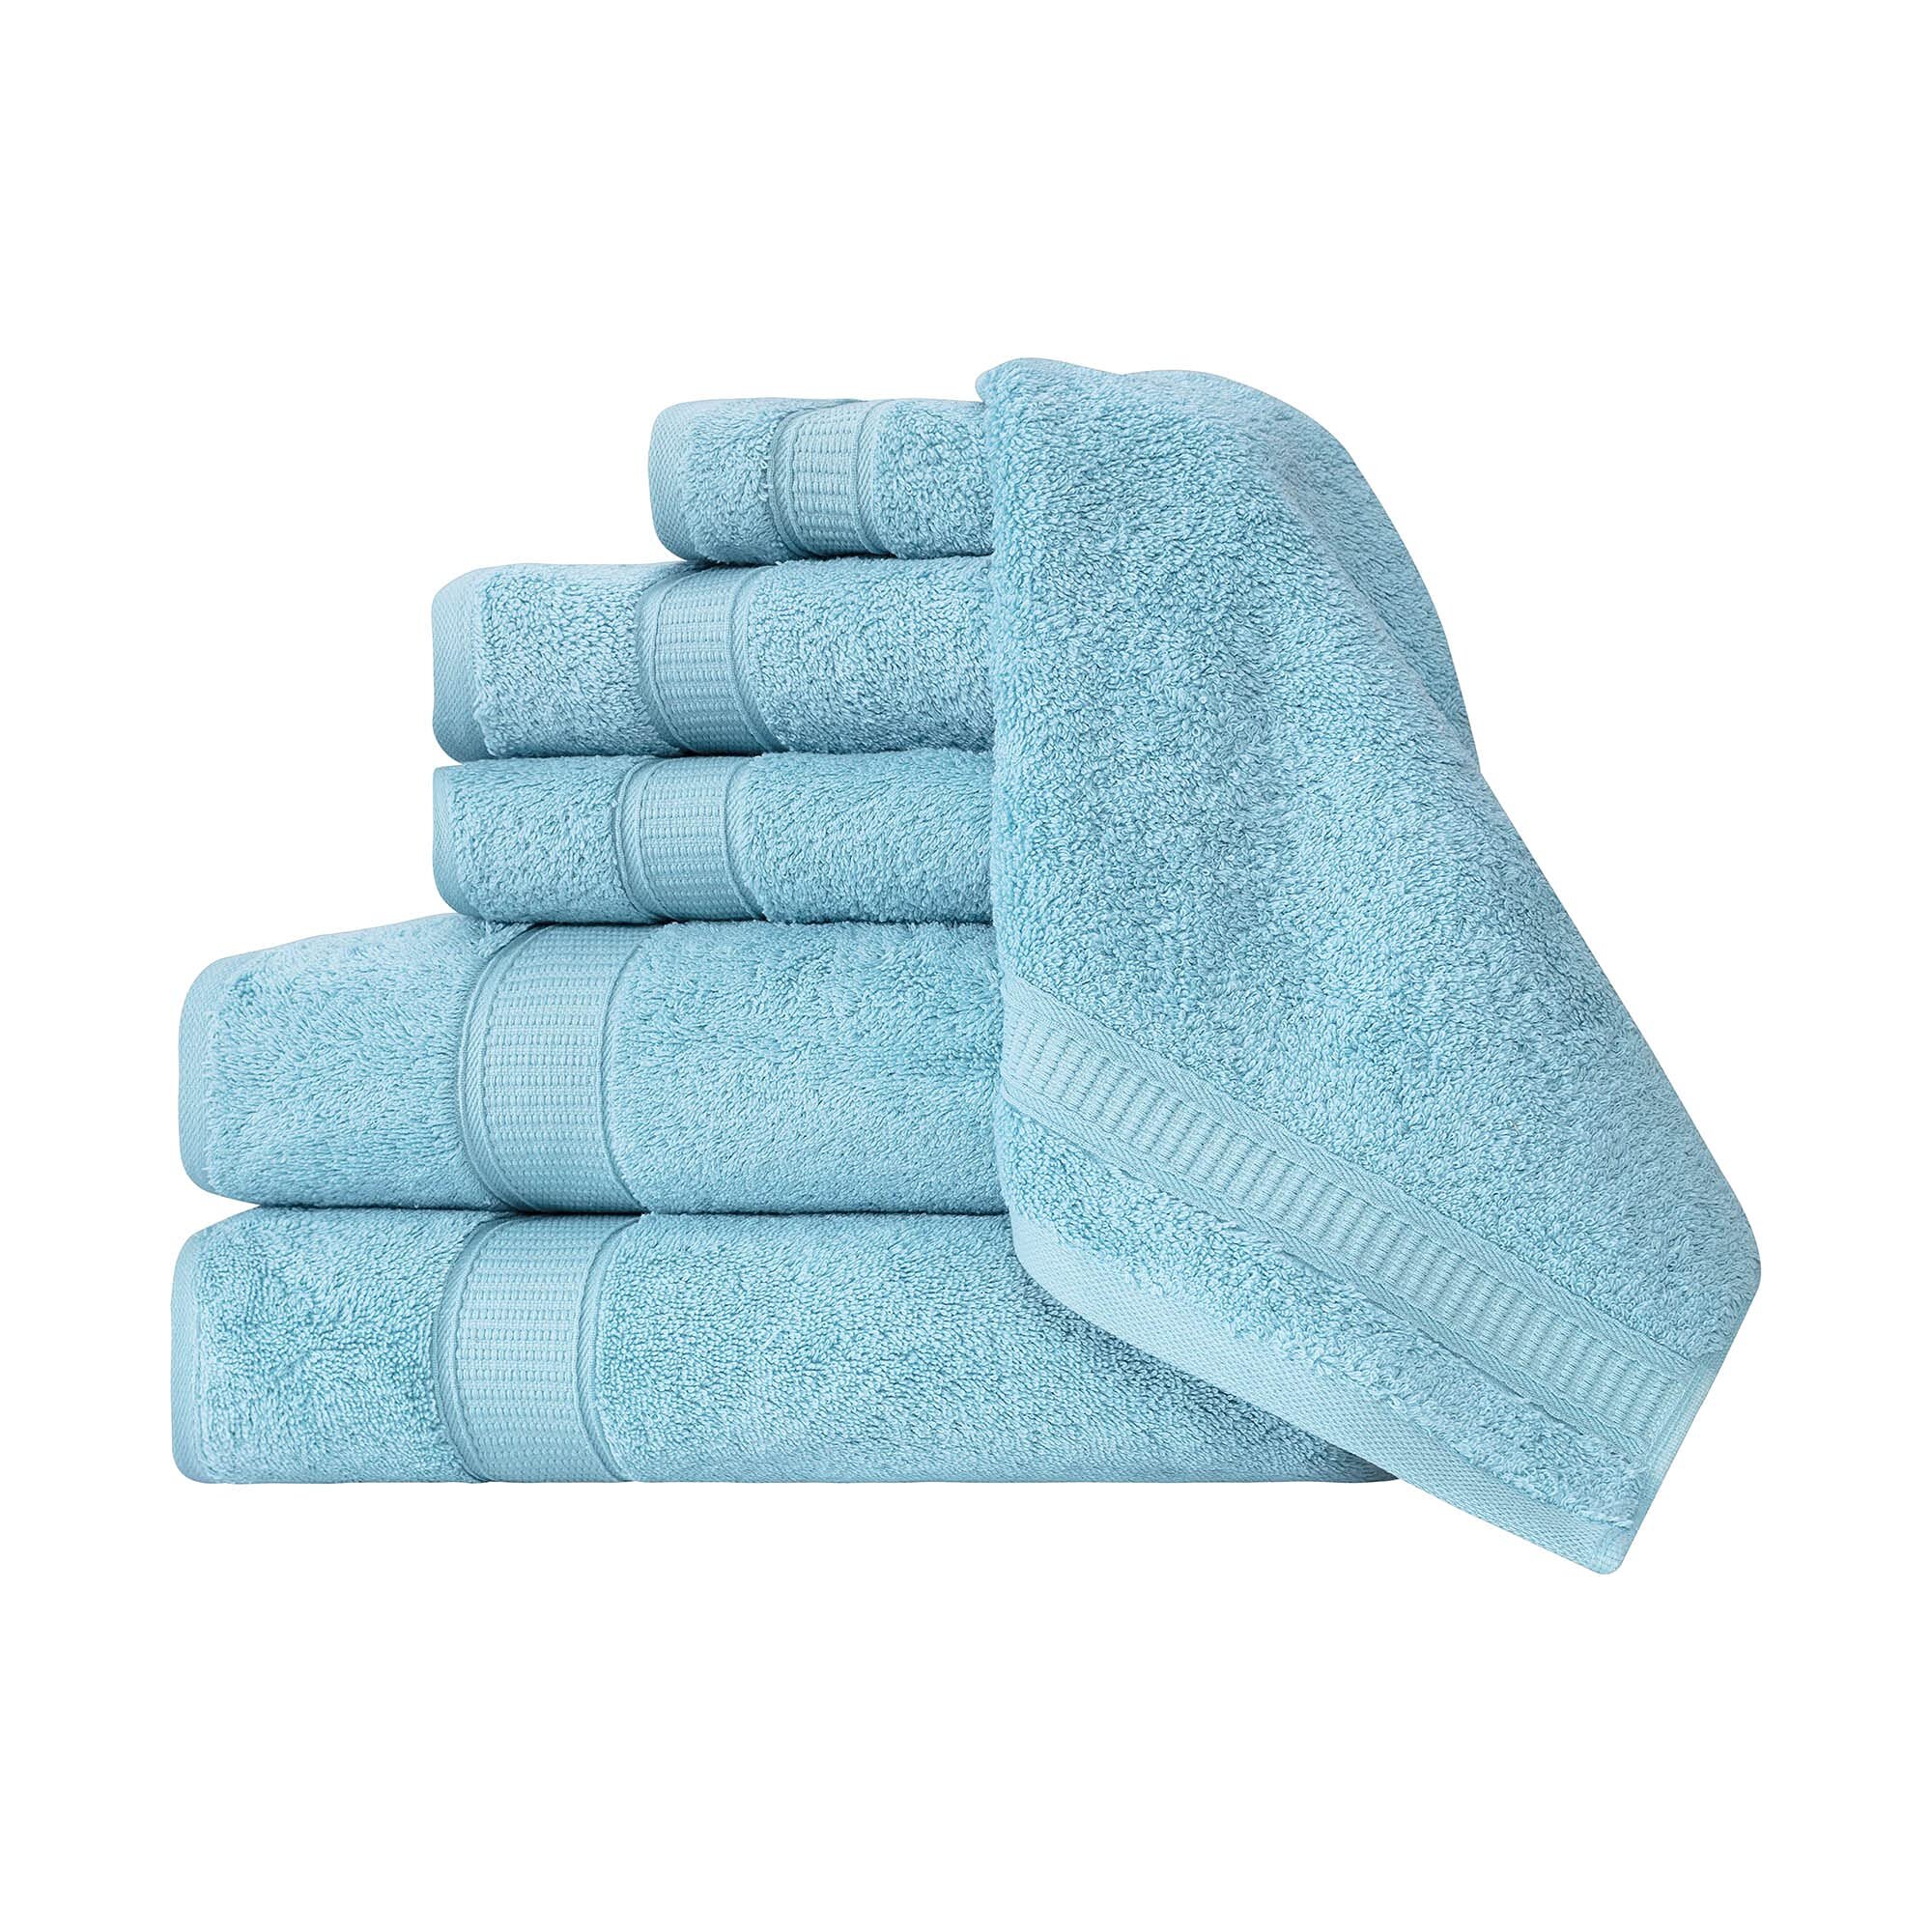 5pcs Cotton Solid Color Towels Bath Sheet Hand Towels Face Salon Hotel Home 